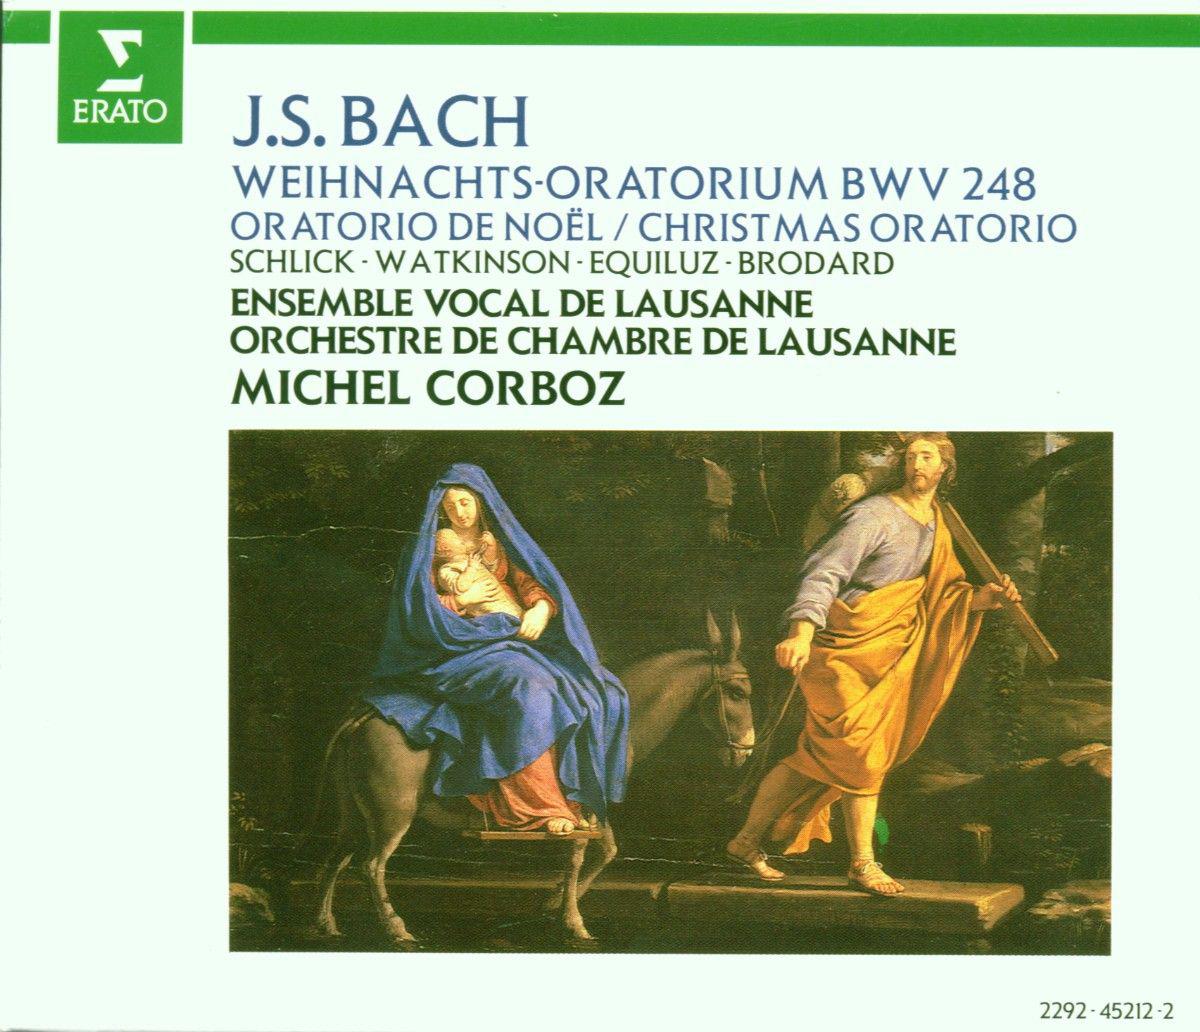 Weihnachtsoratorium, BWV 248, Pt. 2:No. 17, Choral. "Schaut hin, dort liegt im finstern Stall"